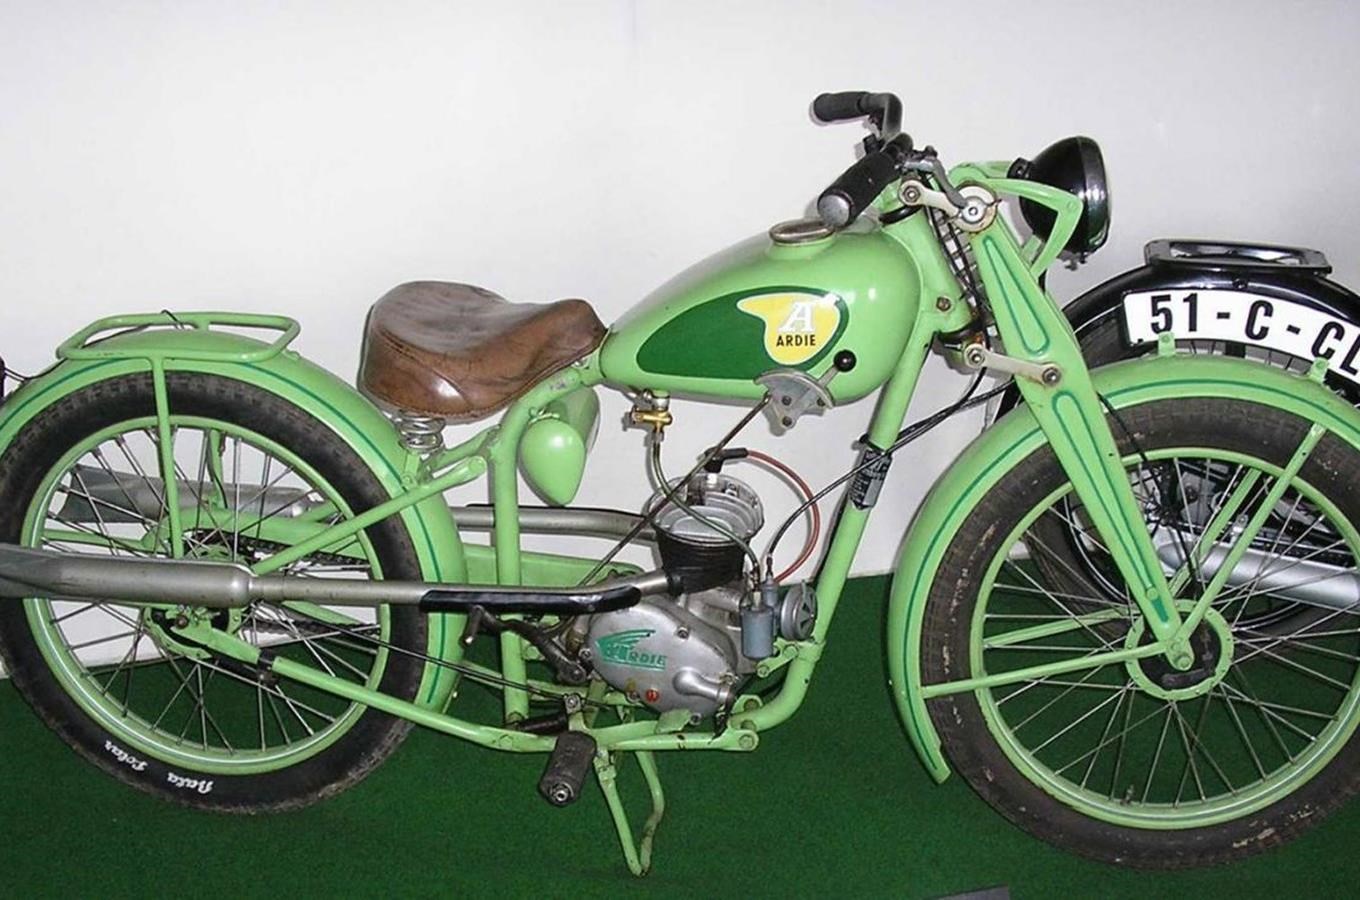 Muzeum historických motocyklů a expozice hraček Bečov nad Teplou